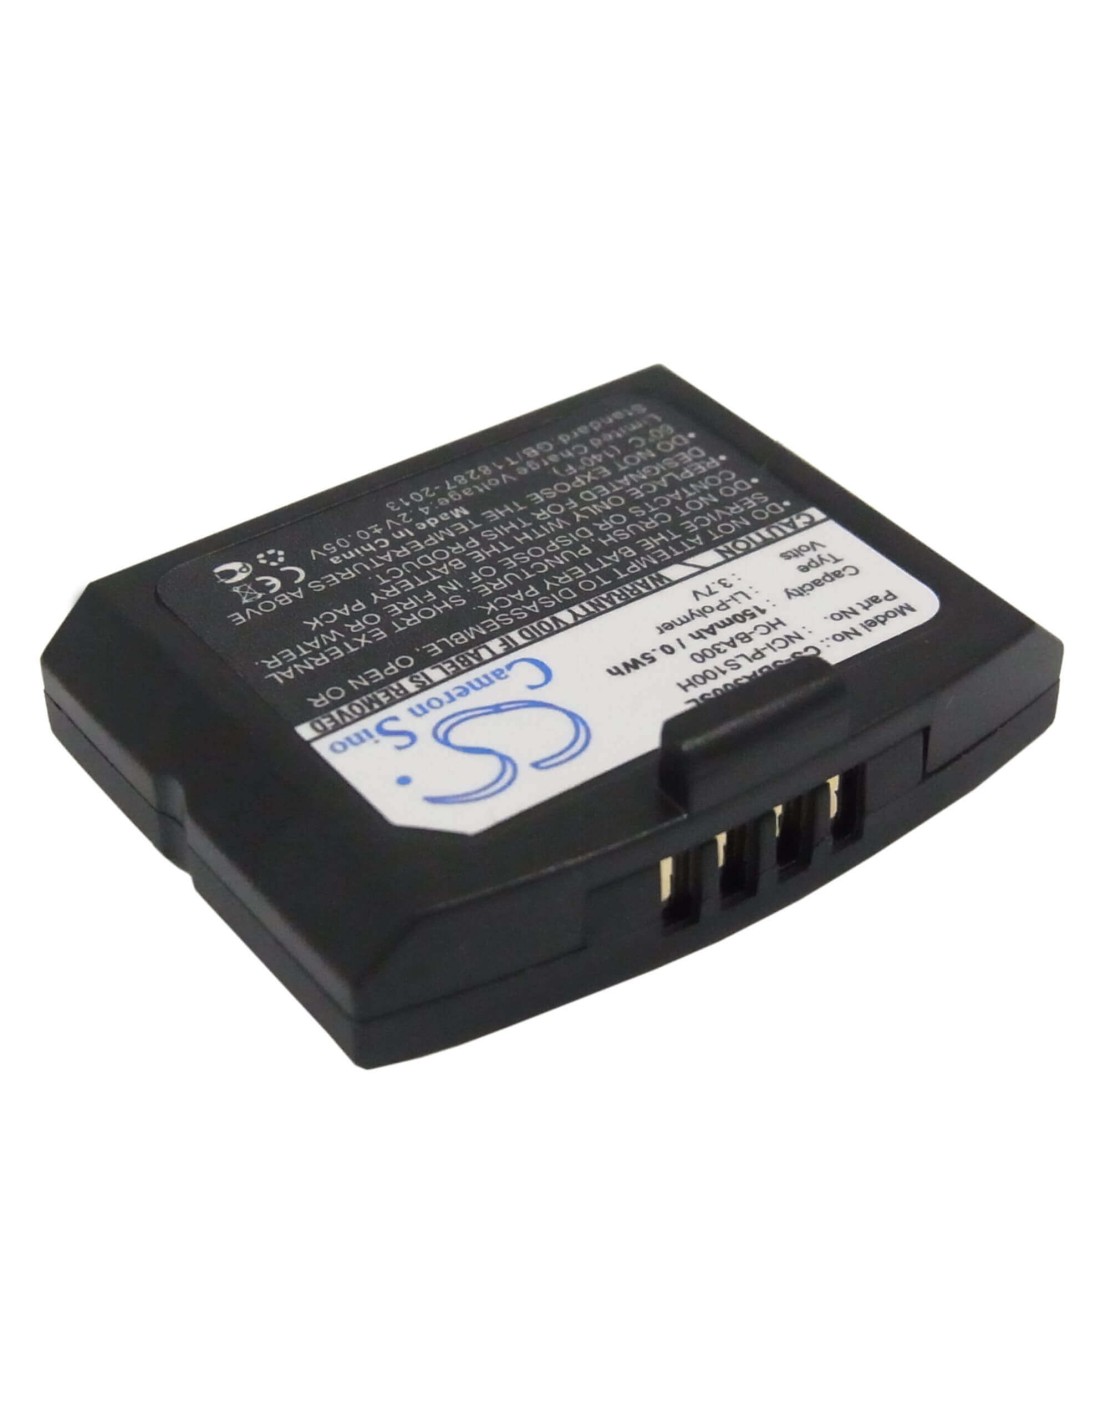 Battery for Sennheiser Is410, Ri410, Rs4200 3.7V, 150mAh - 0.56Wh